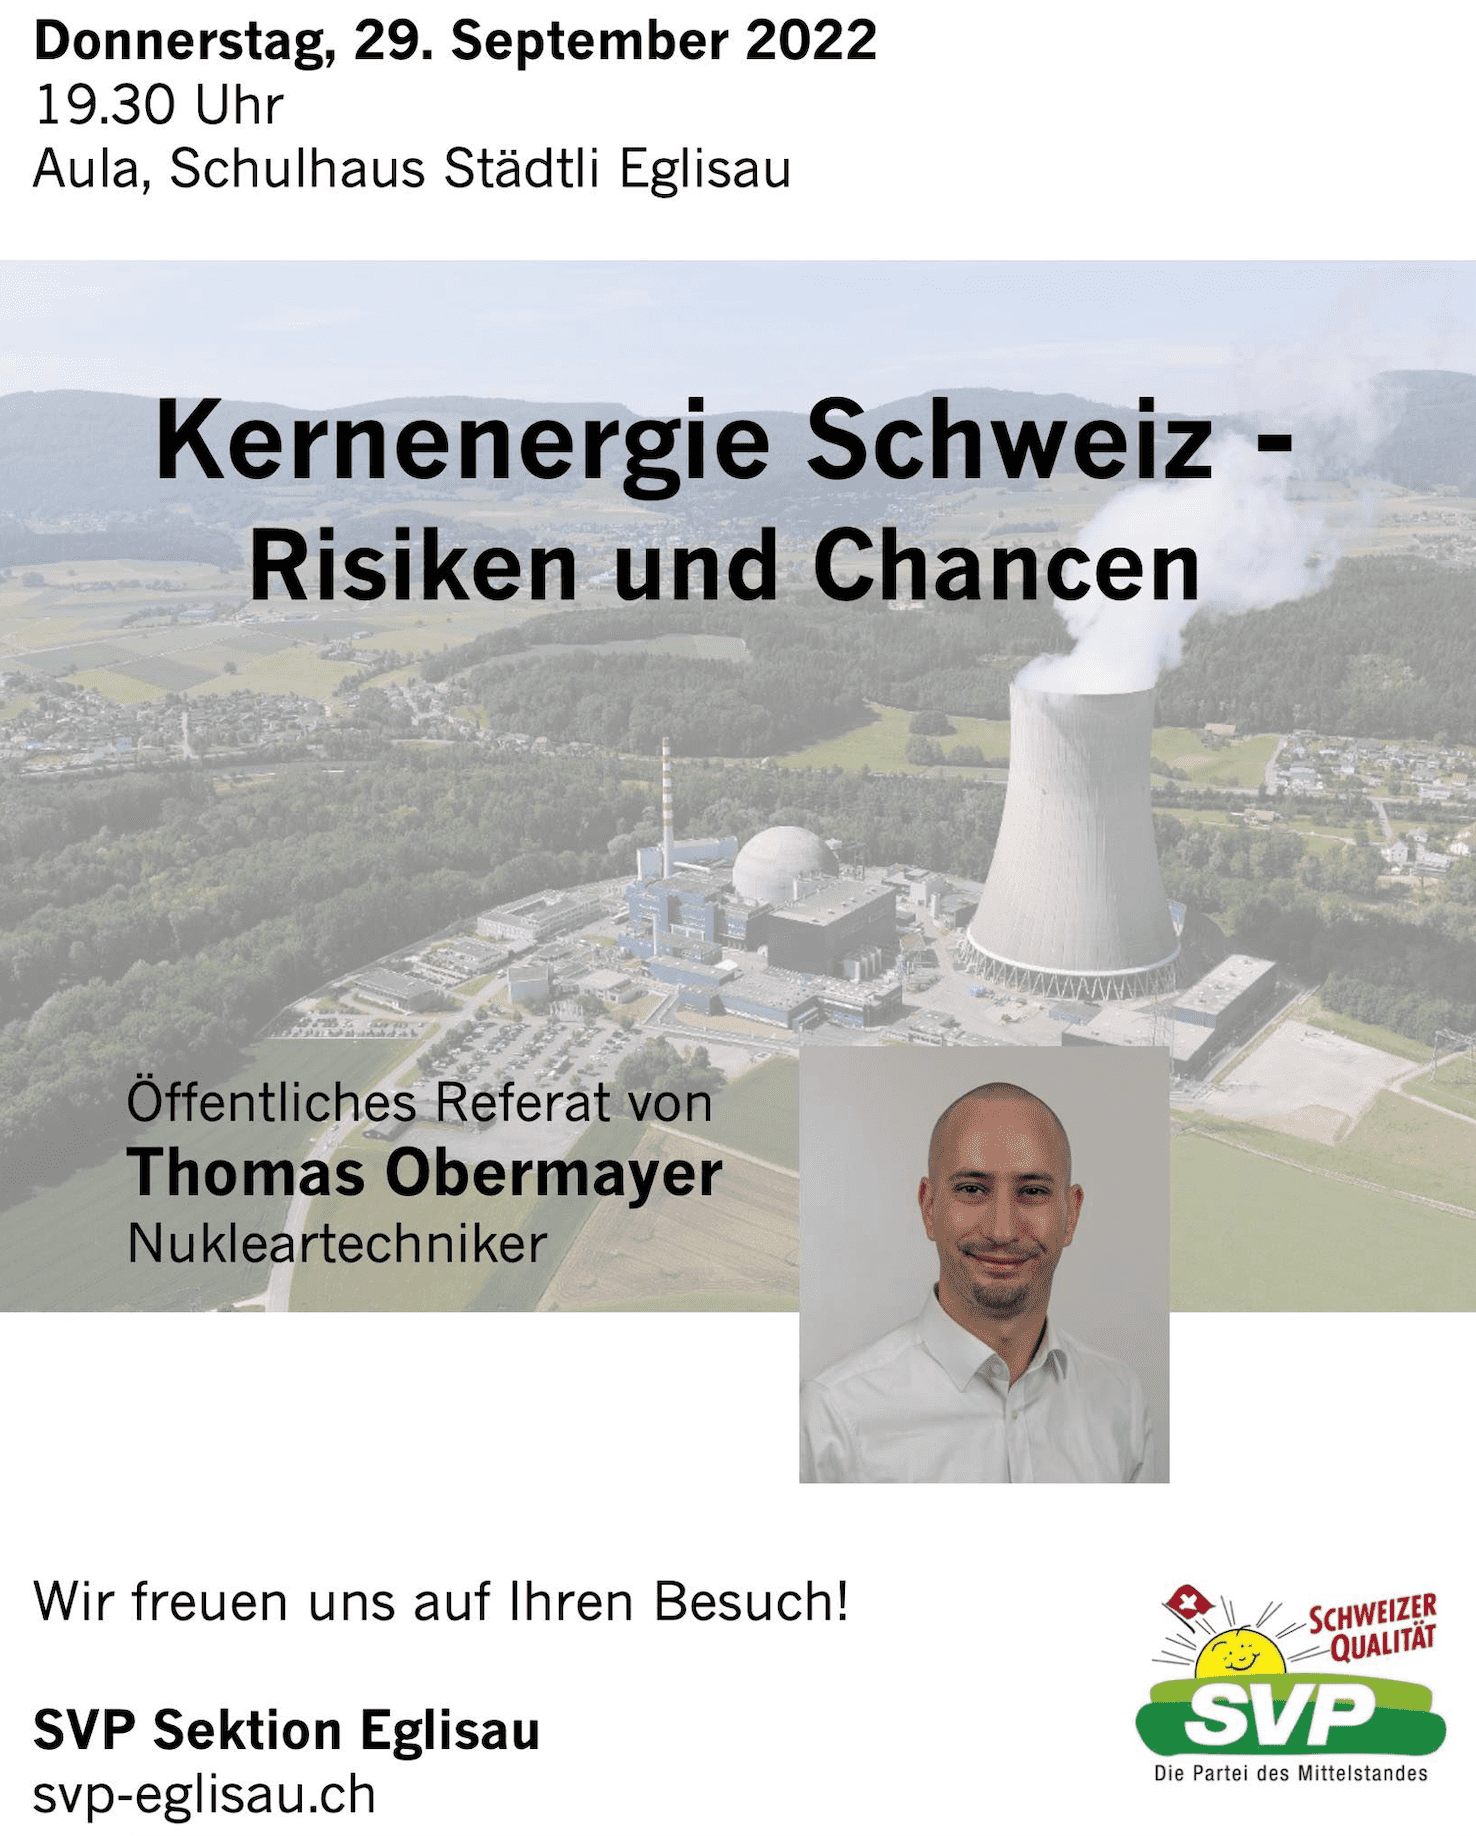 Kernenergie Schweiz - Risiken und Chancen